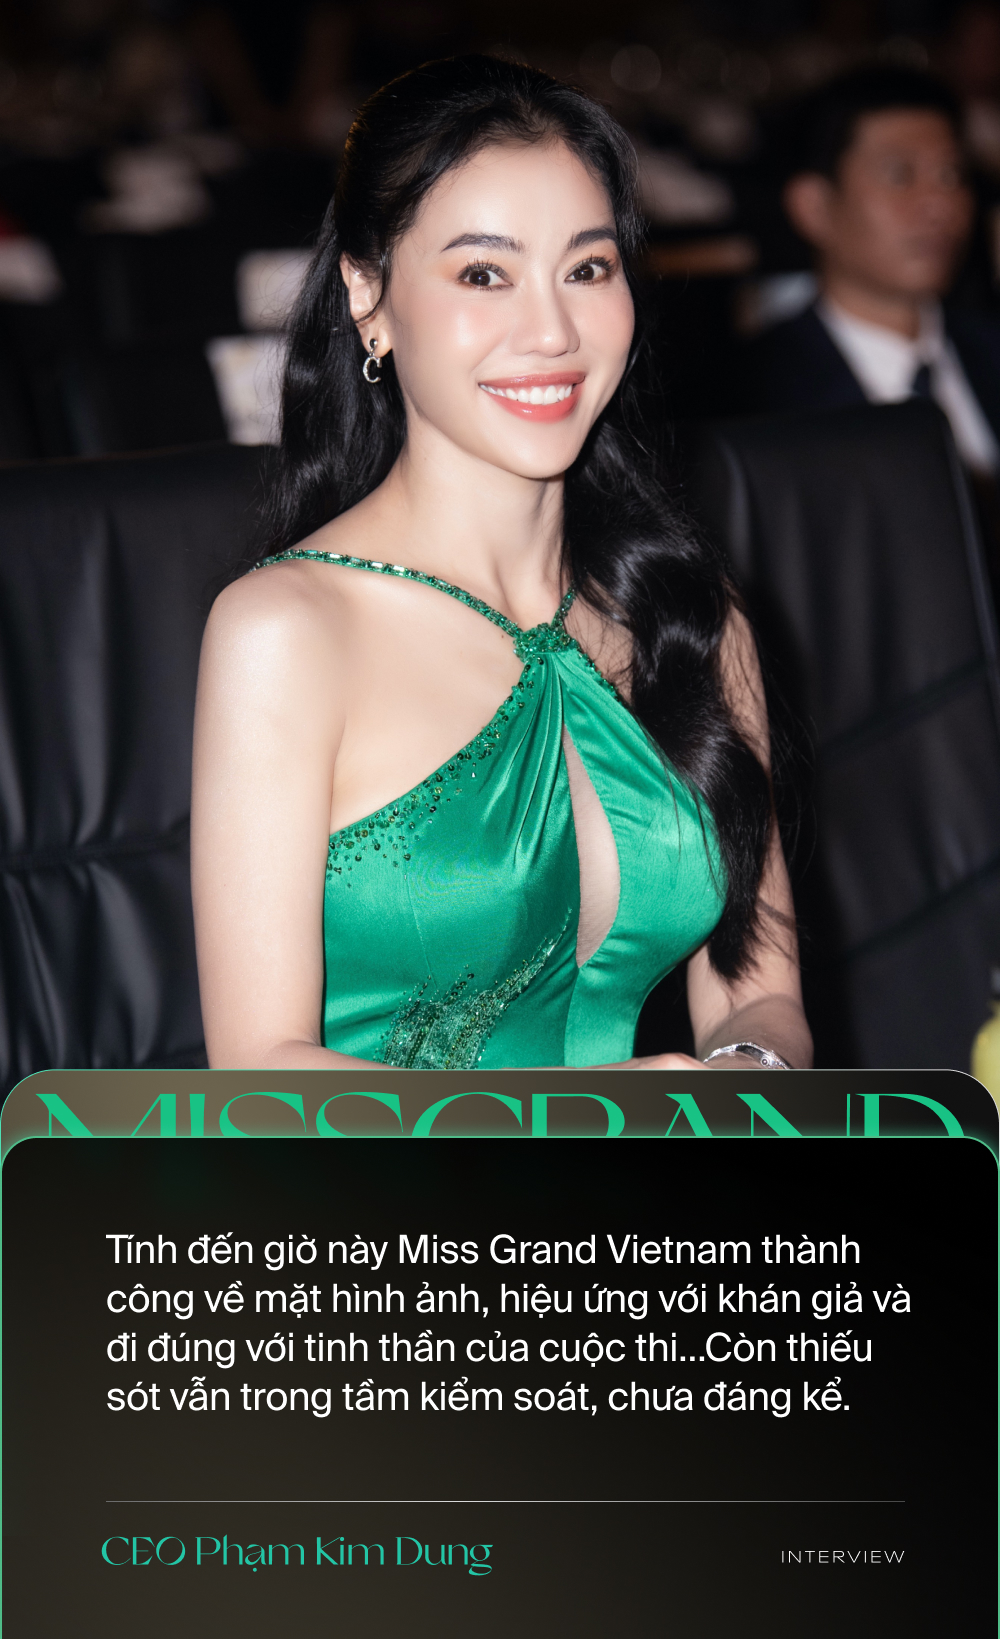 Miss Grand Vietnam: Hãy cùng chúng tôi đón đợi sự kiện sắp tới Miss Grand Vietnam để được chiêm ngưỡng vẻ đẹp và tài năng của các thí sinh. Sự kiện này hứa hẹn sẽ mang đến những giây phút thăng hoa và hạnh phúc cho khán giả.